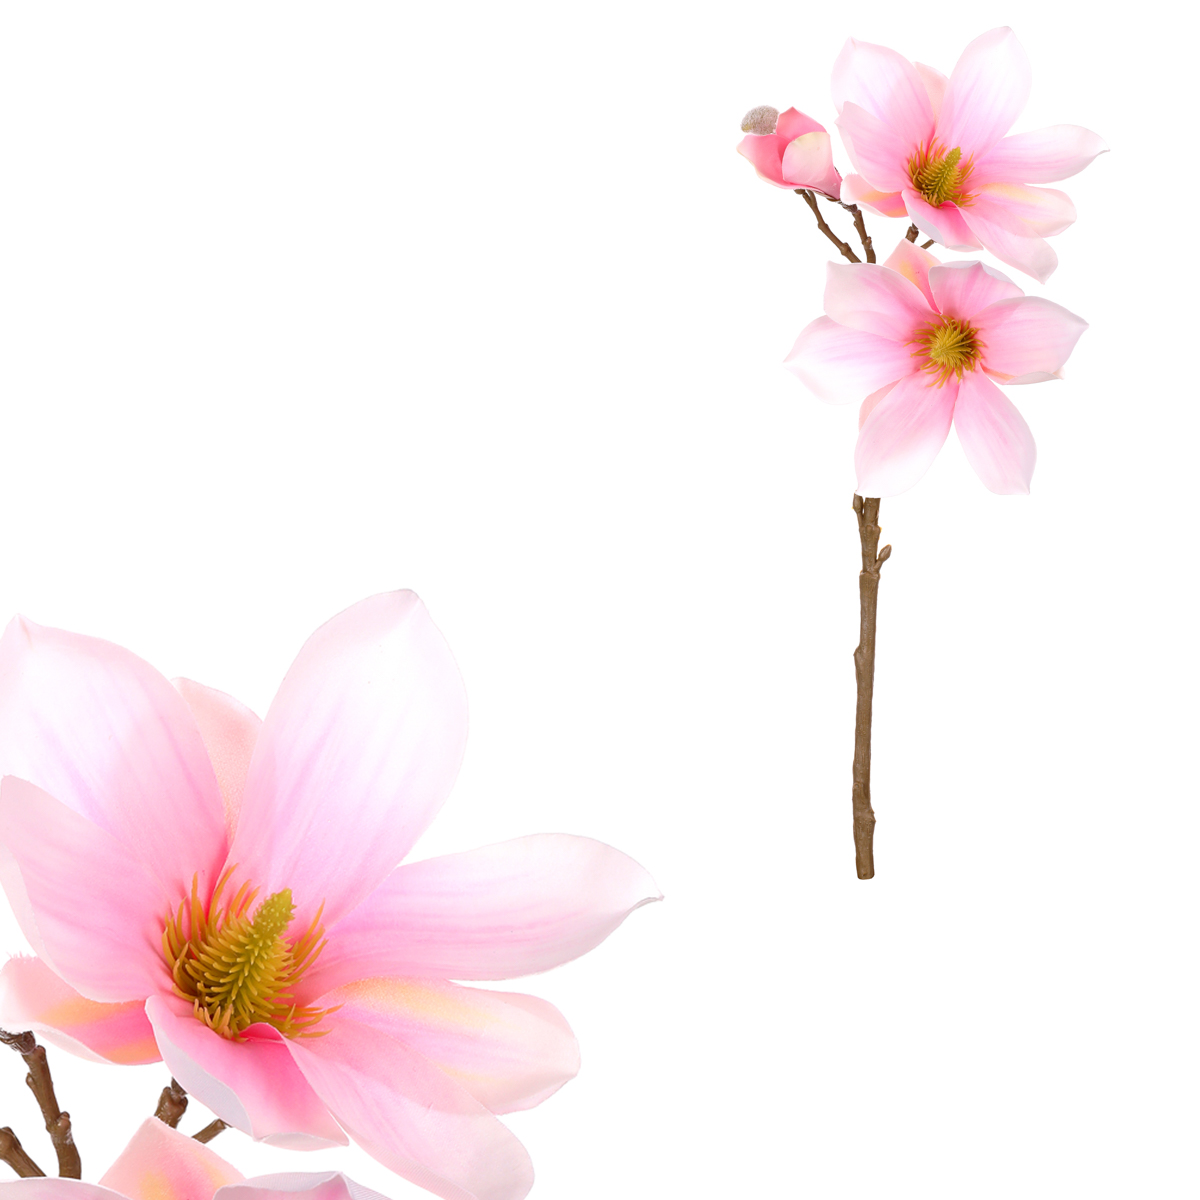 Magnolie - umělá květina, barva růžovo - bílá.